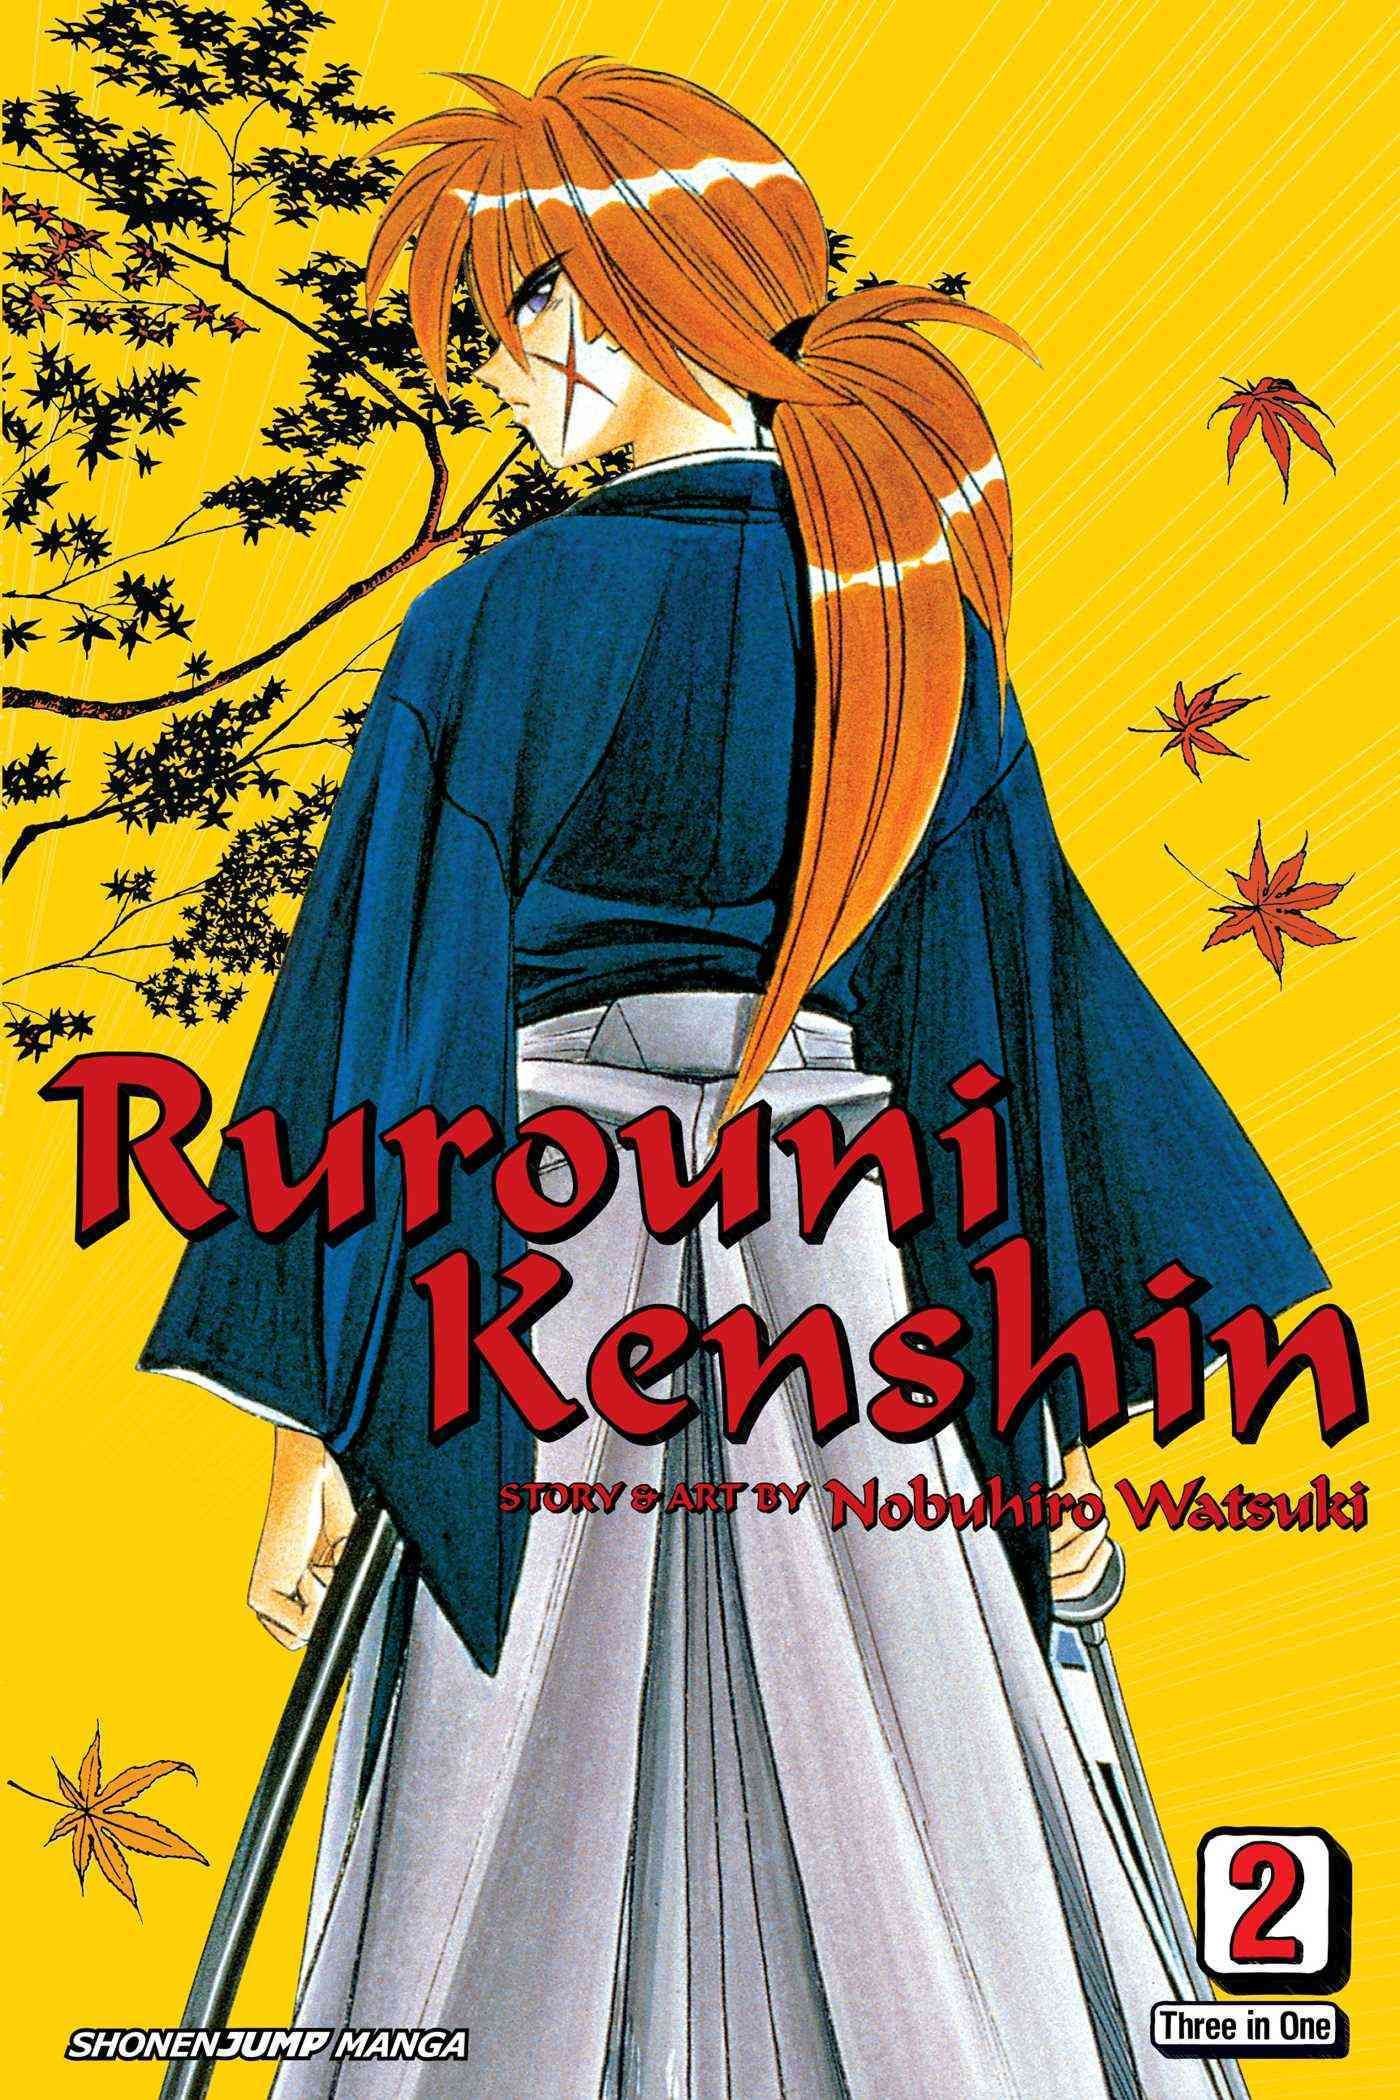 Rurouni Kenshin, Volume 01 by Nobuhiro Watsuki